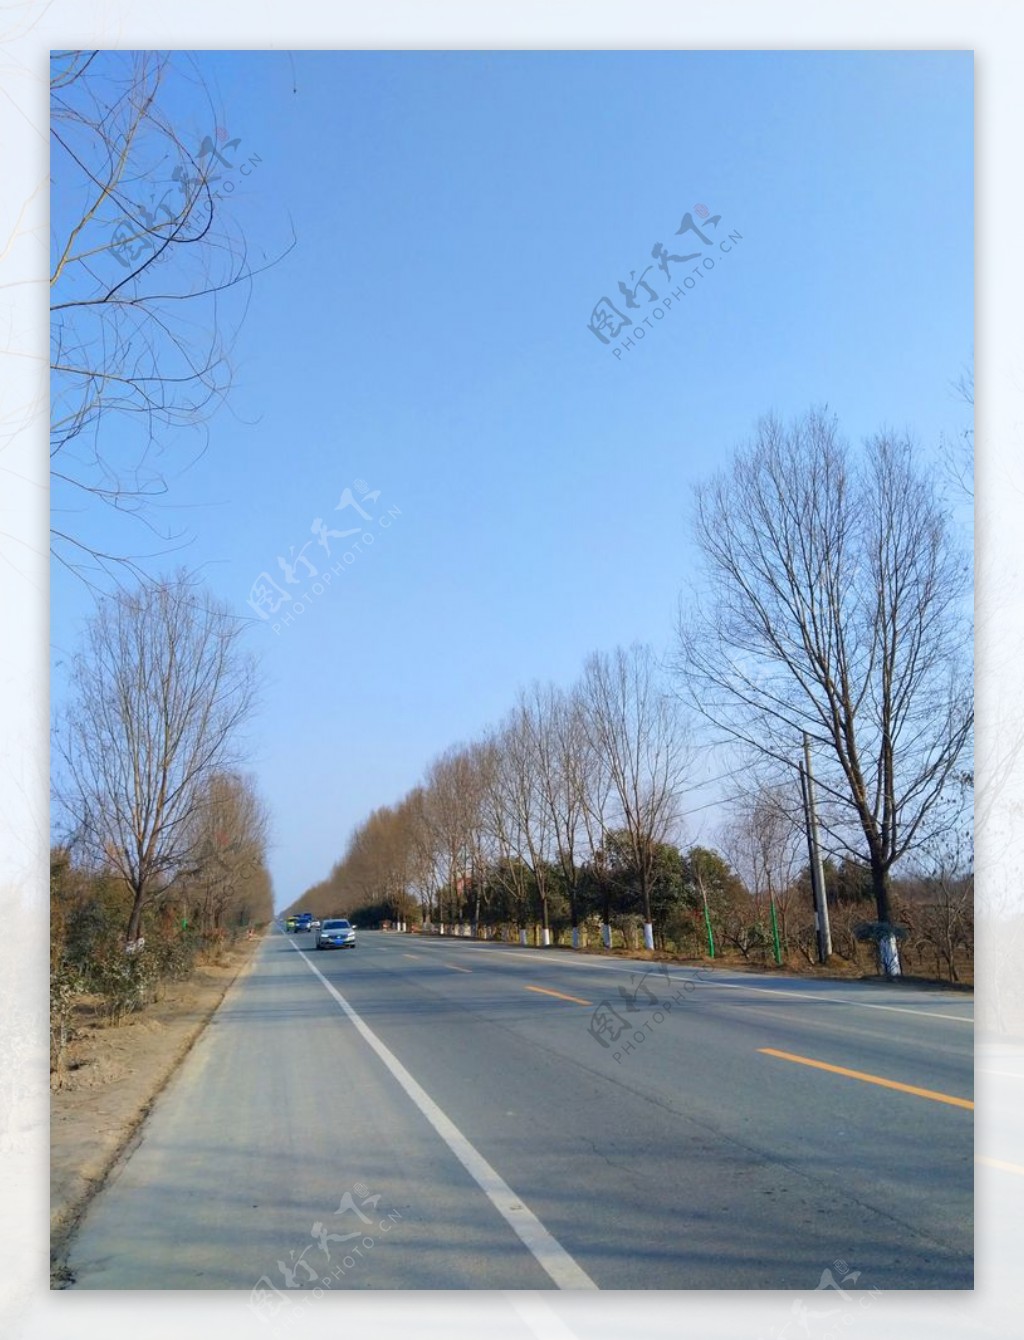 蓝天下的乡村道路风景